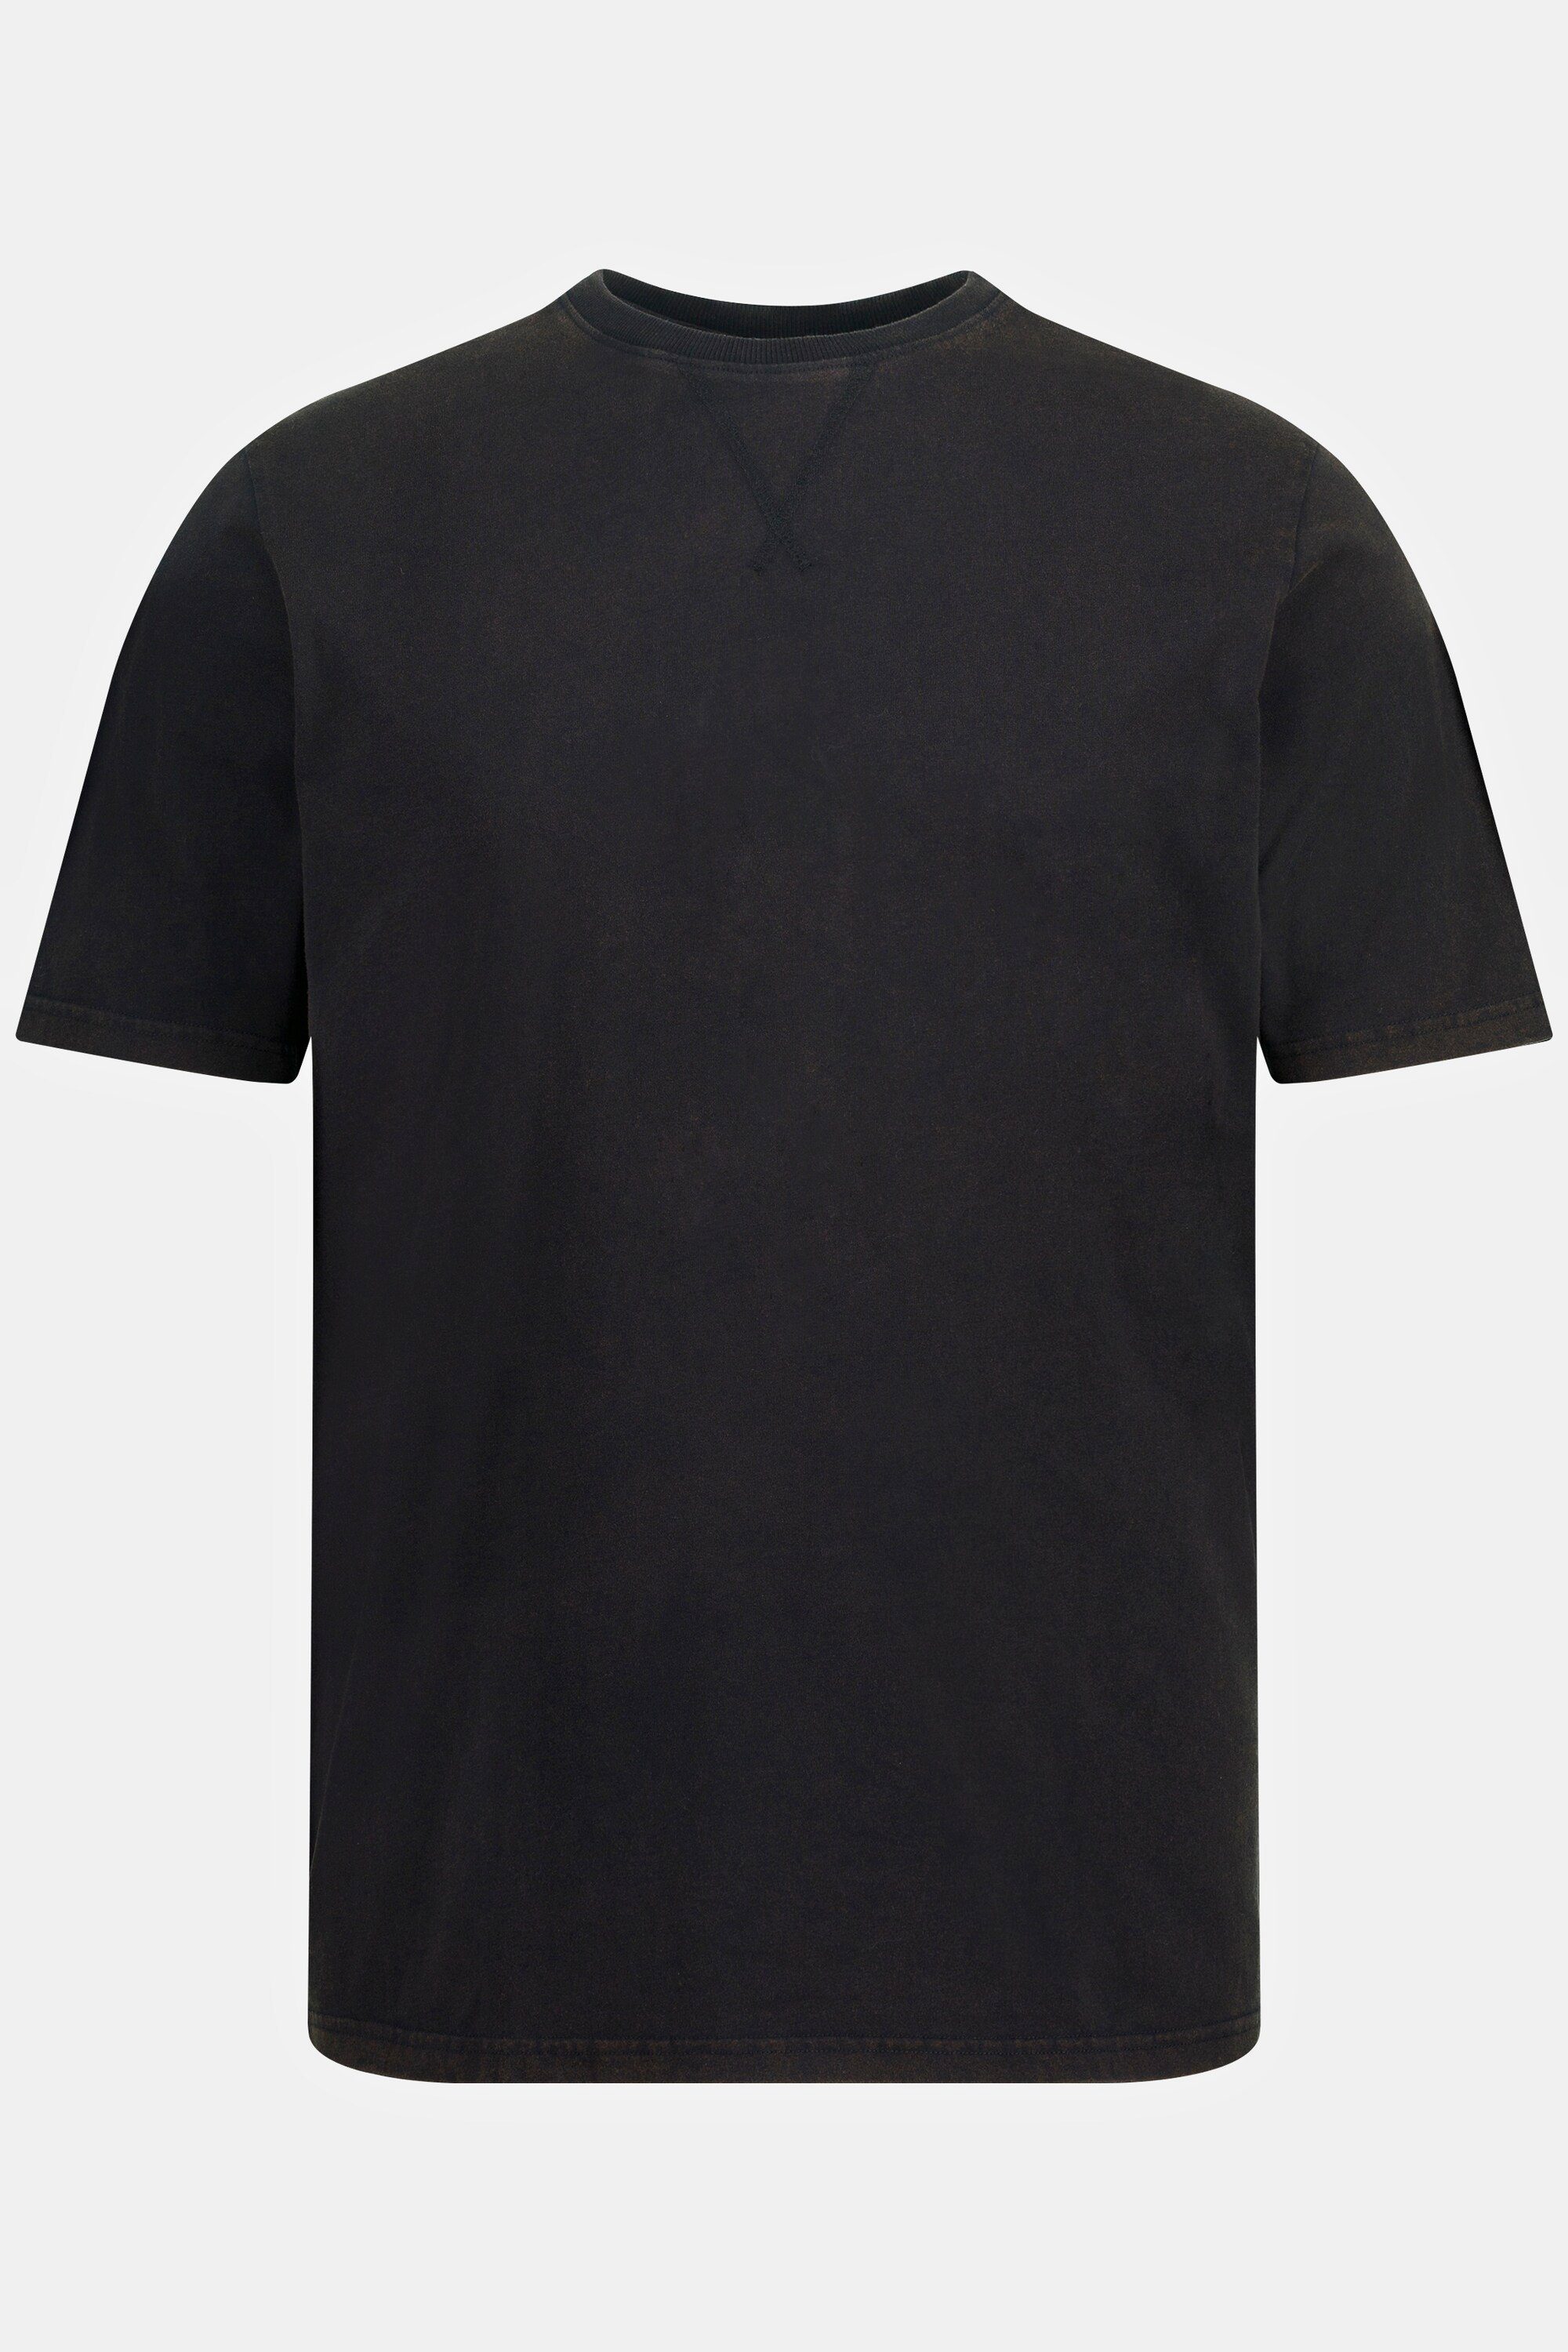 Rundhals acid T-Shirt washed JP1880 schwarz T-Shirt Halbarm